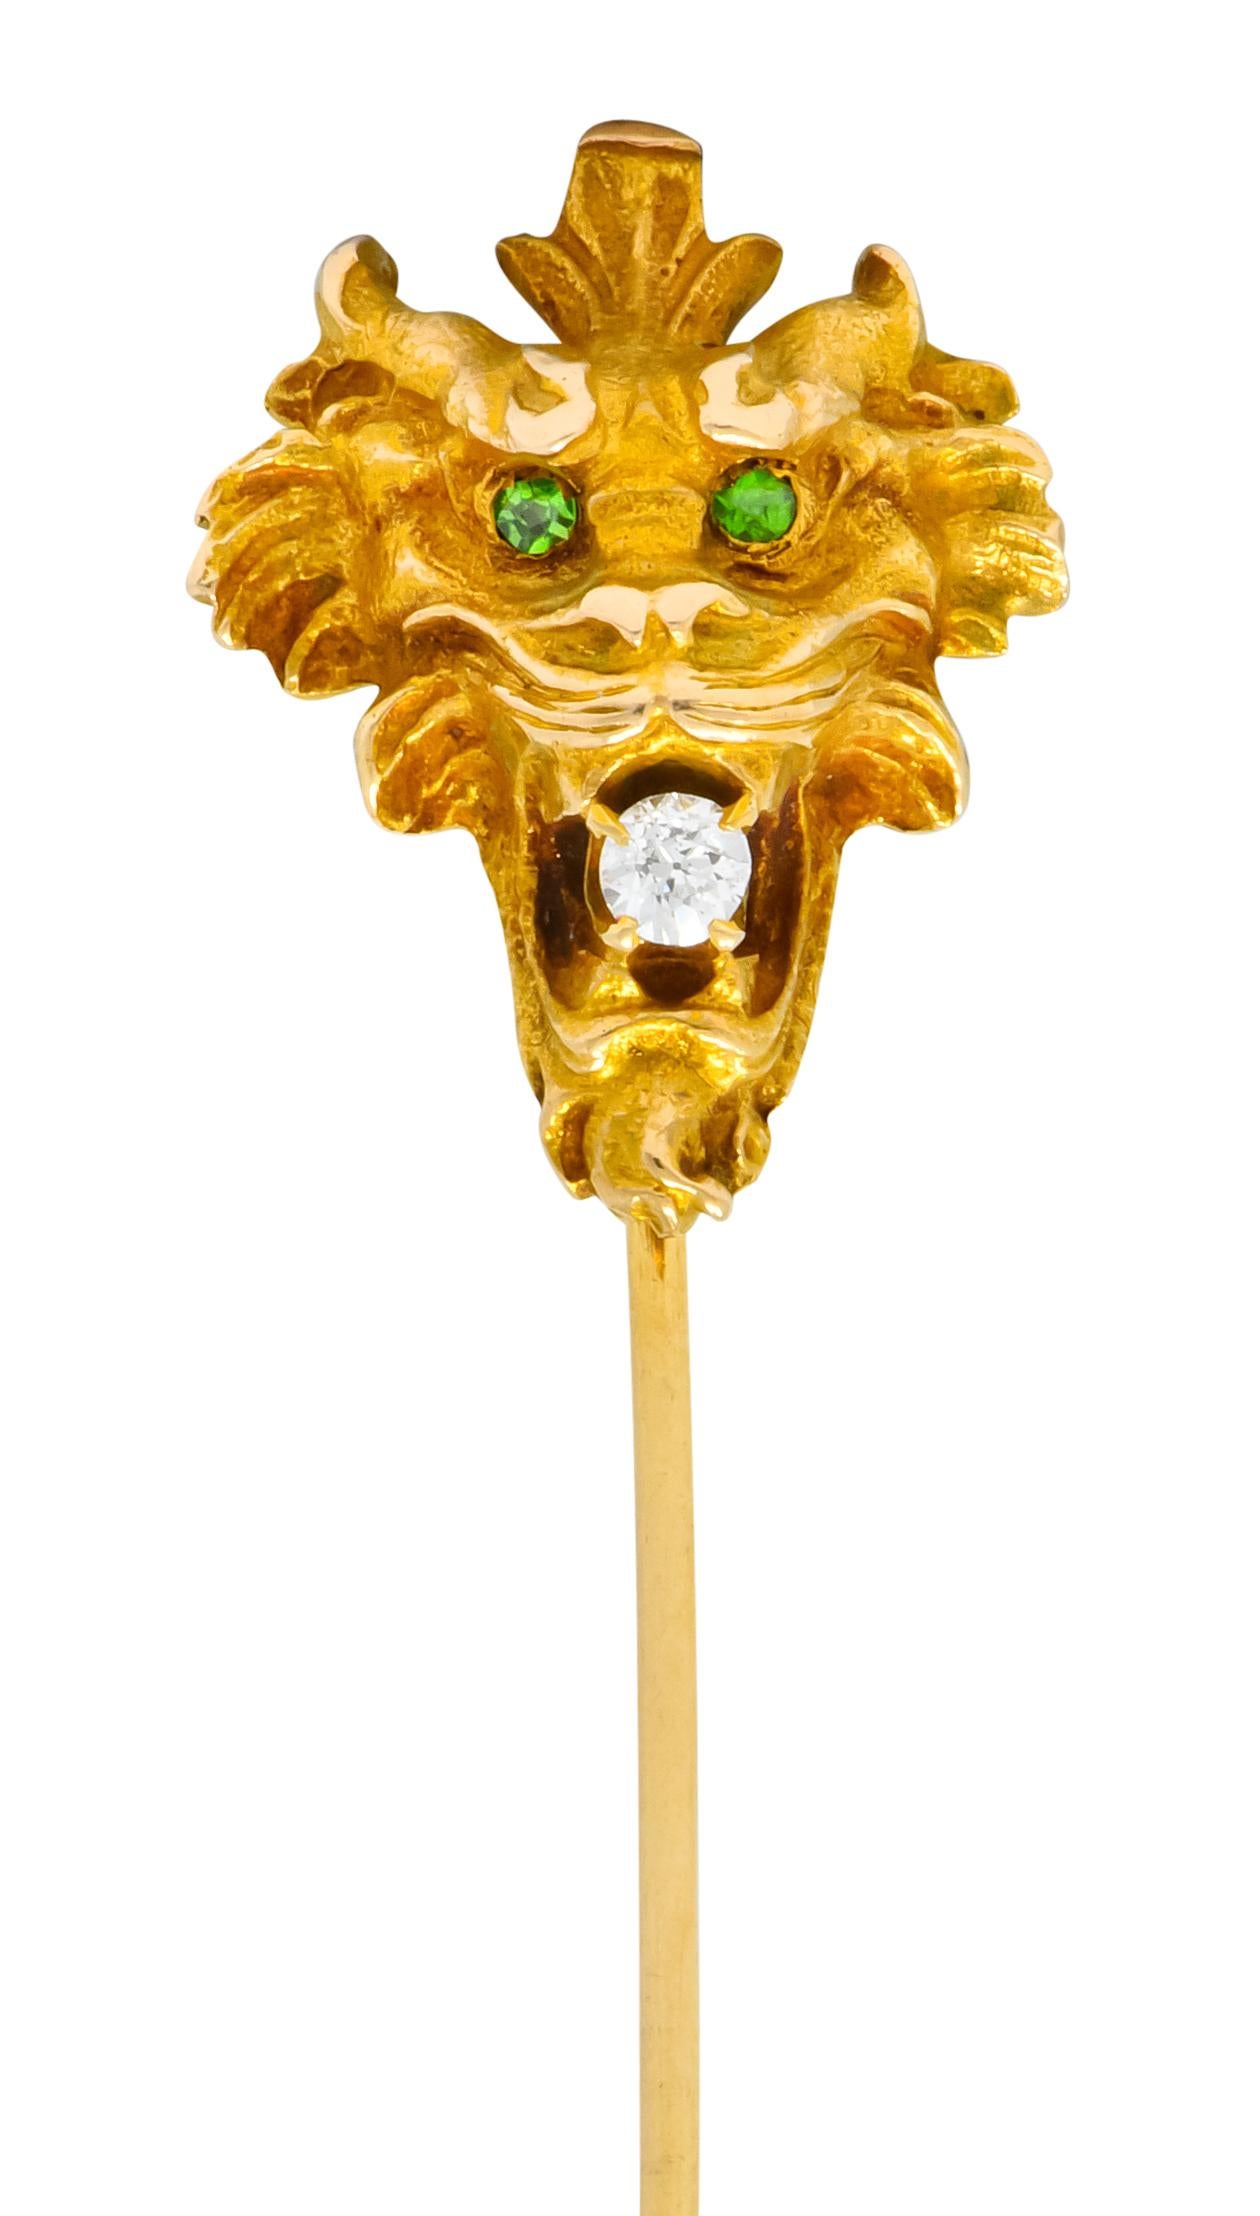 Darstellung eines knurrenden Tigergesichts mit stilisiertem Fell und mattgoldener Oberfläche

Er hält einen Diamanten im Übergangsschliff mit einem Gewicht von ca. 0,10 Karat in seinen Klauen; augenrein und weiß

Vervollständigt durch zwei rund